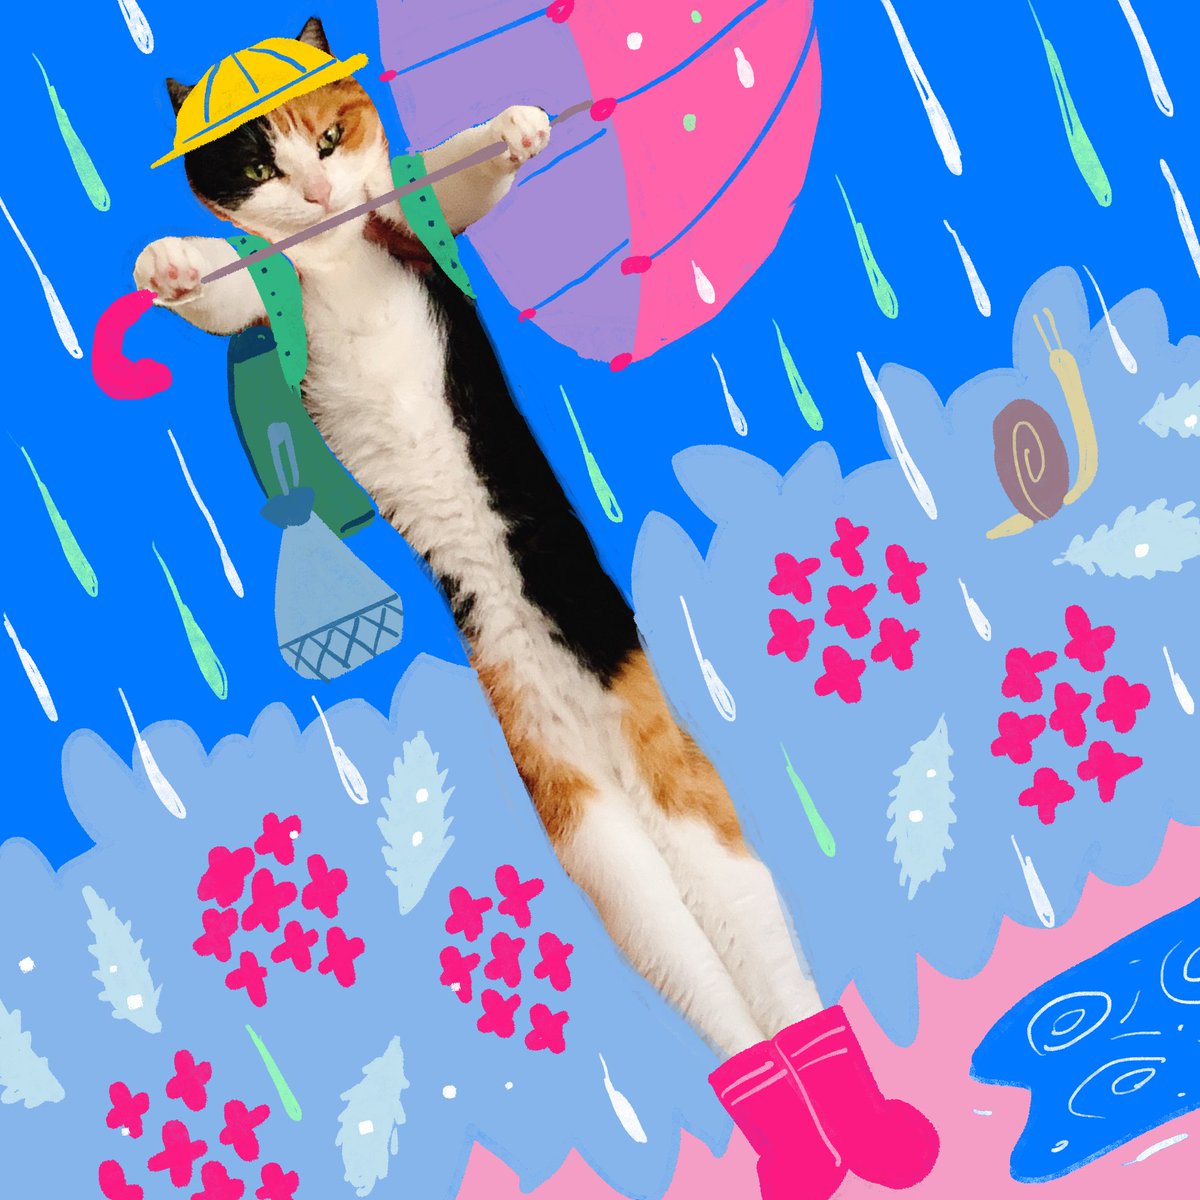 umbrella cat rain no humans rubber boots bag hat  illustration images